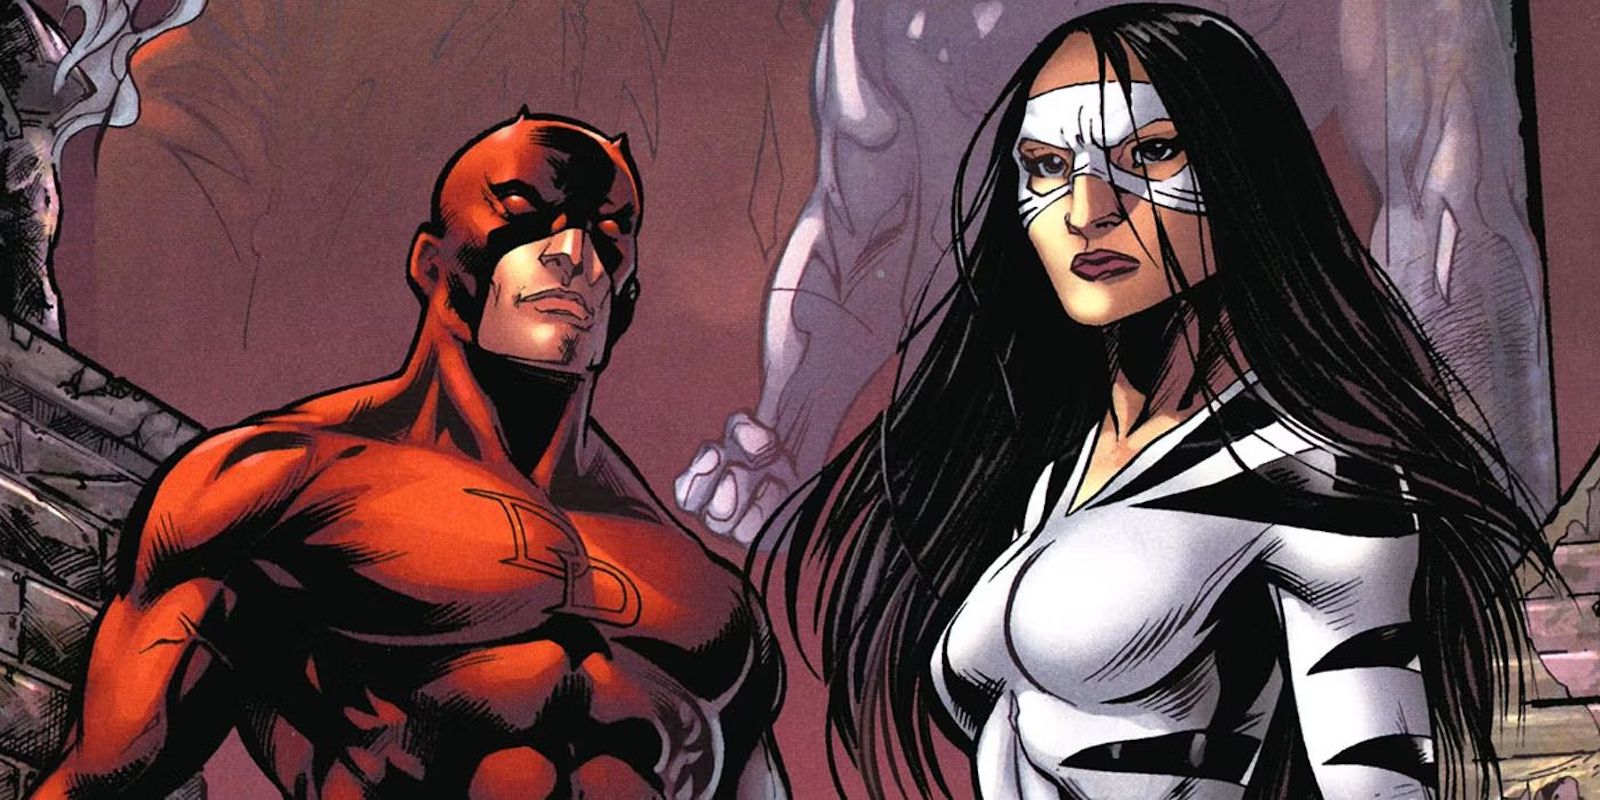 Daredevil: Born Again vedrà l'esordio di Tigre Bianca, spin-off già in lavorazione?